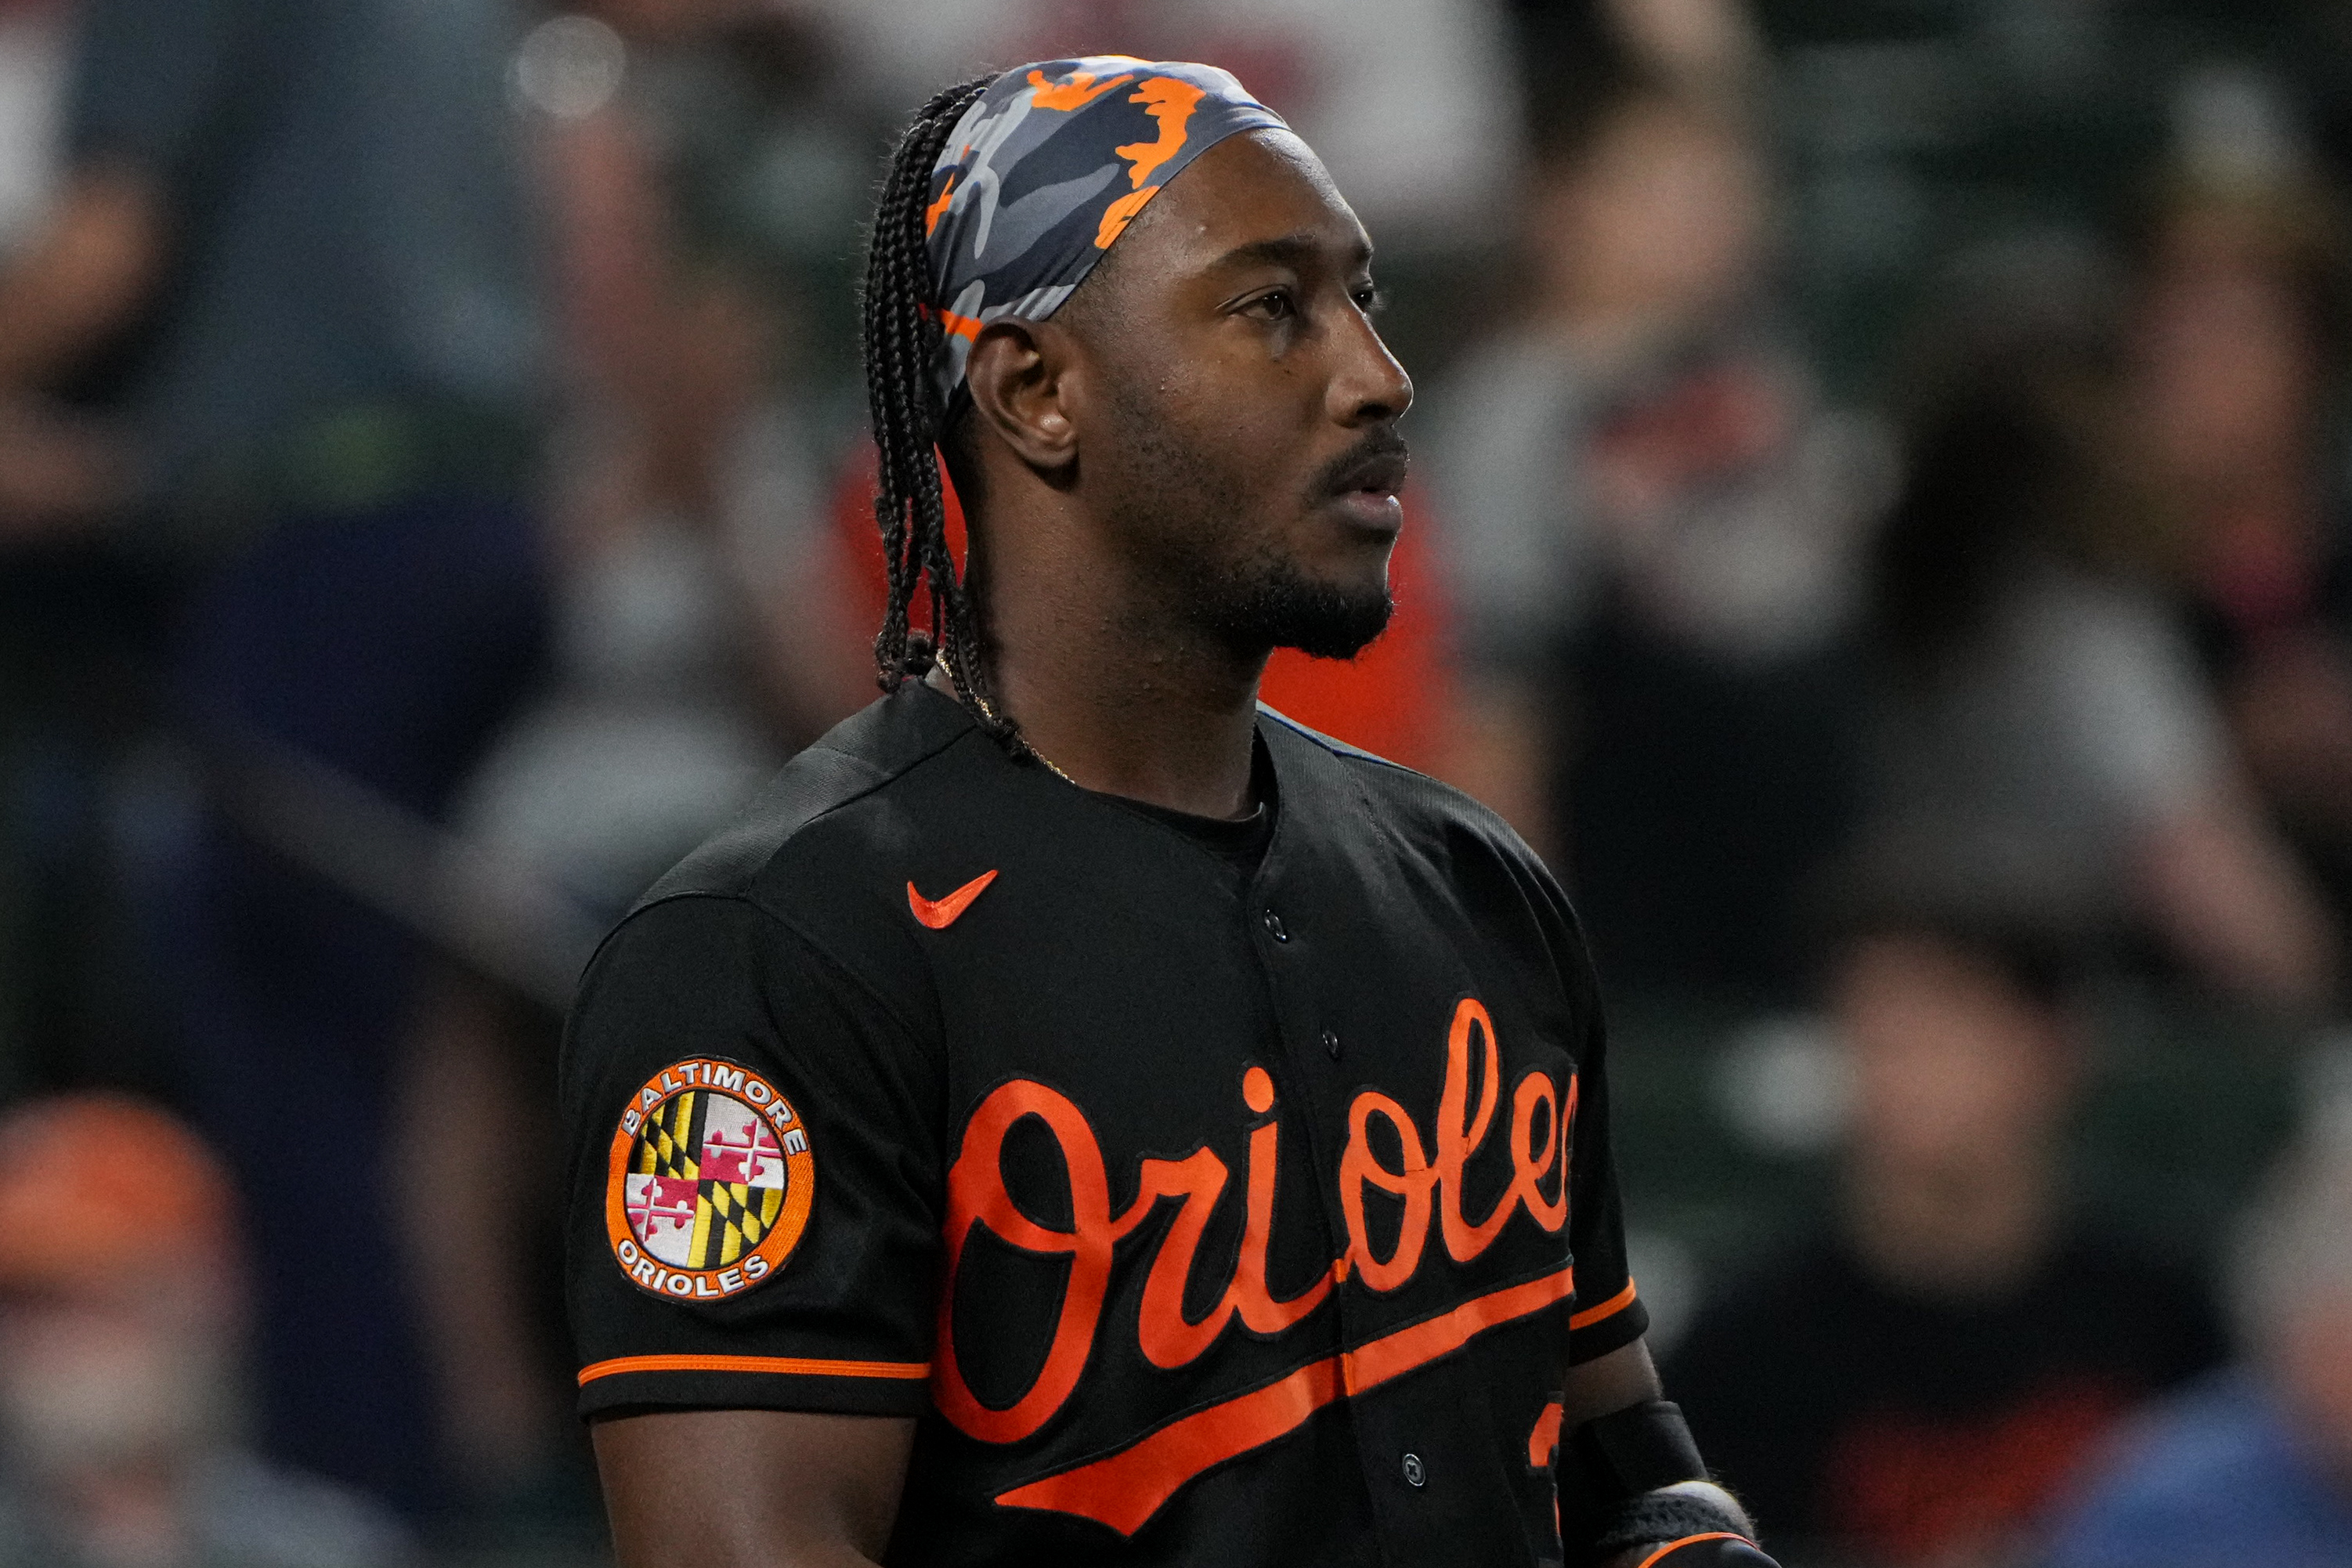 Baltimore Orioles: Jorge Mateo's Future in Baltimore